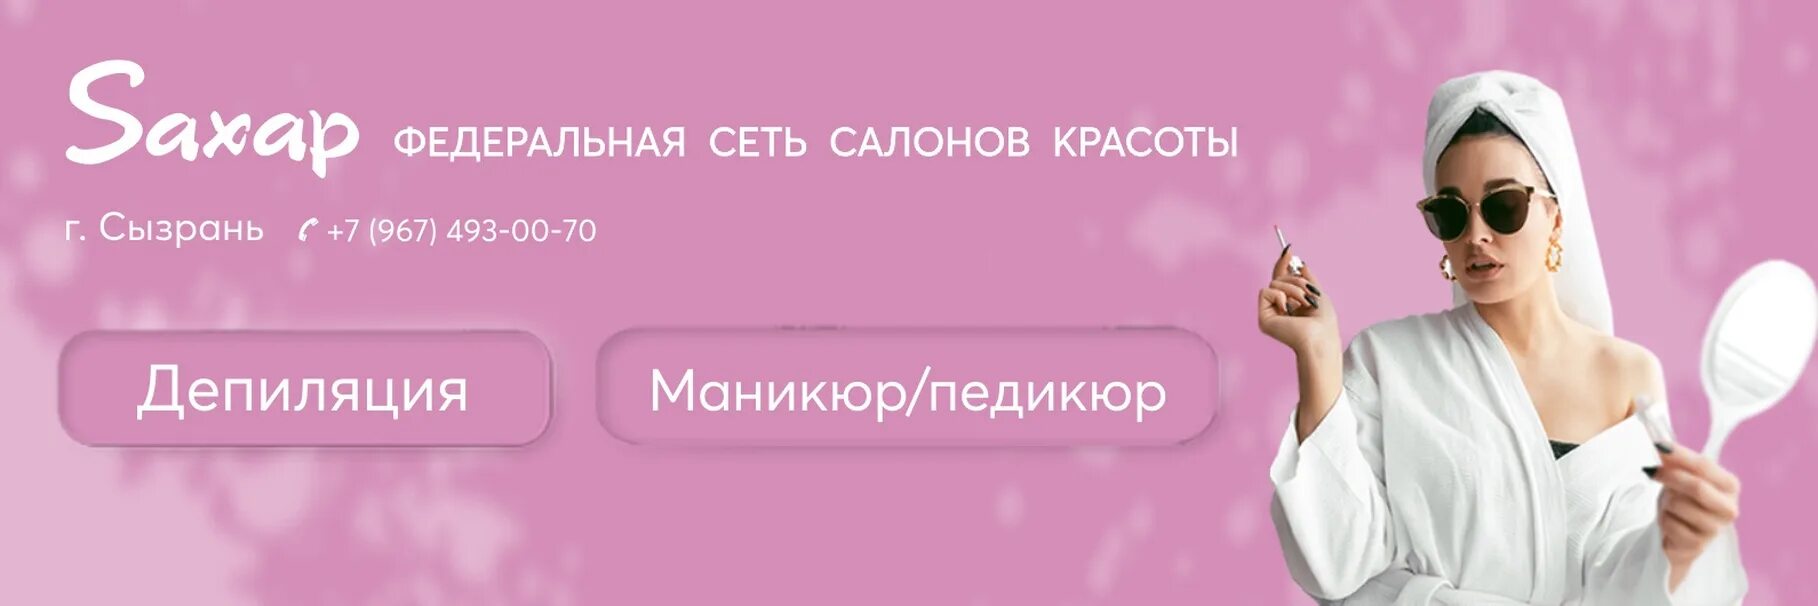 Салон сахар телефон. Салон красоты сахар. Сахар салон красоты Ставрополь. Сахар салон красоты Ярославль. Салон сахар логотип.